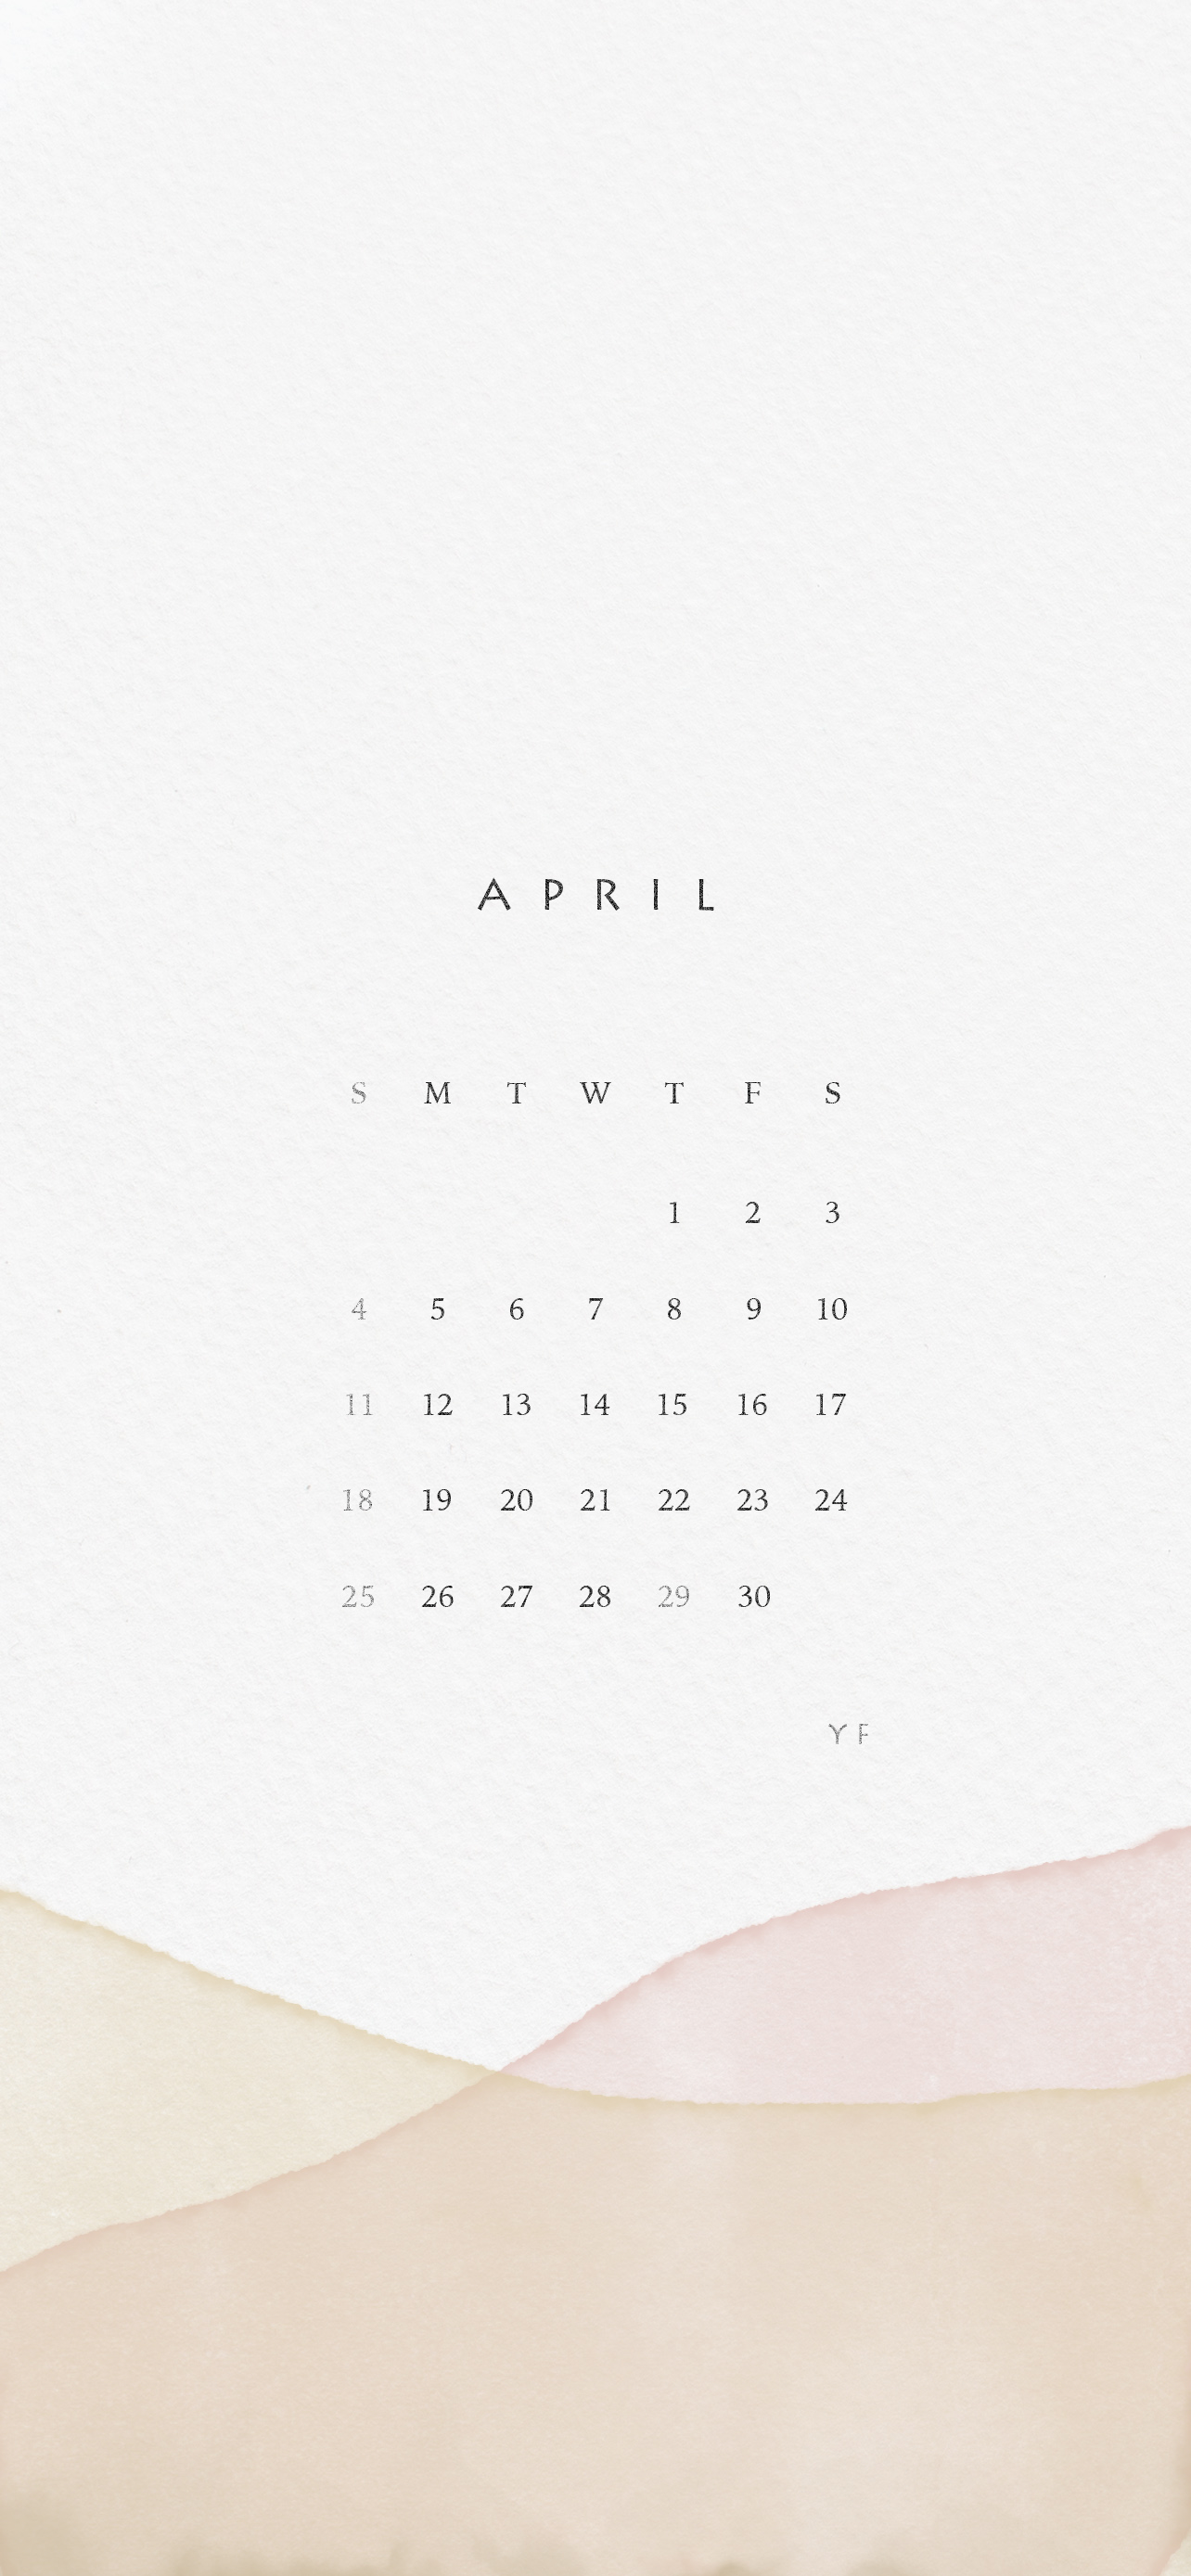 2021年4月のiPhone版日曜日始まりカレンダー壁紙 イエロー×ピンク 1284×2778px